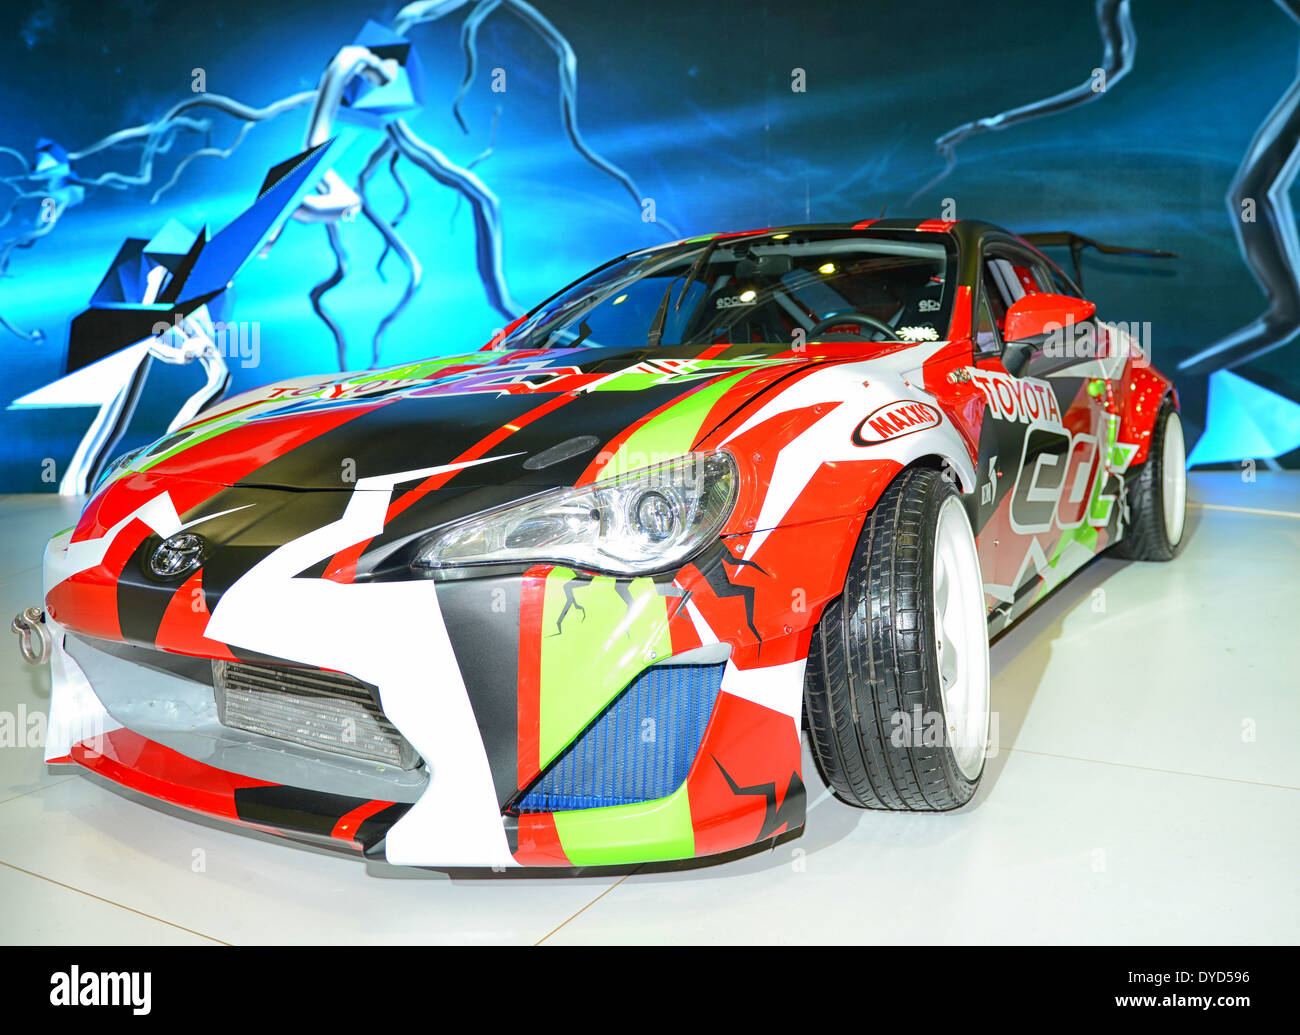 Toyota Racing Car am Stand auf der Dubai Motor Show 2013, Vereinigte Arabische Emirate Stockfoto